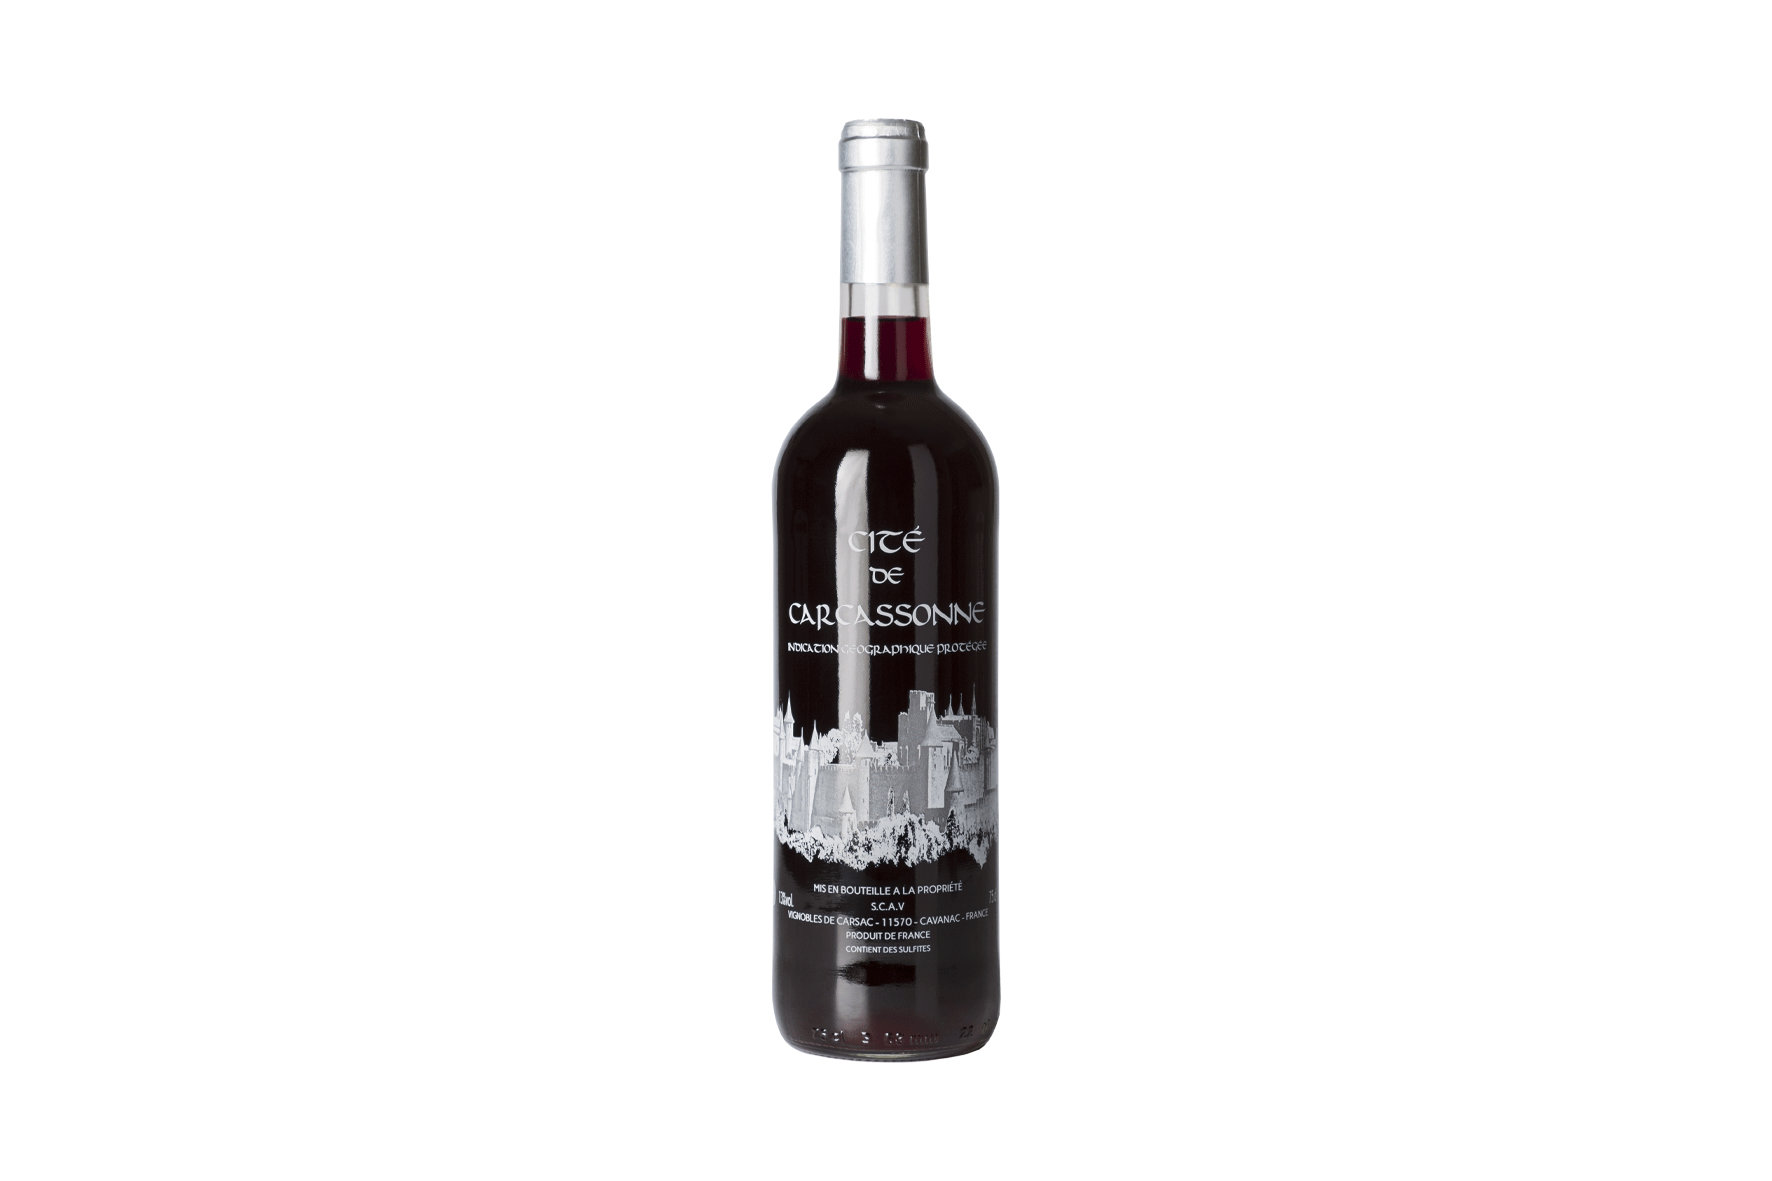 Bouteille de vin rouge sérigraphié cité de Carcassonne des Vignobles de Carsac